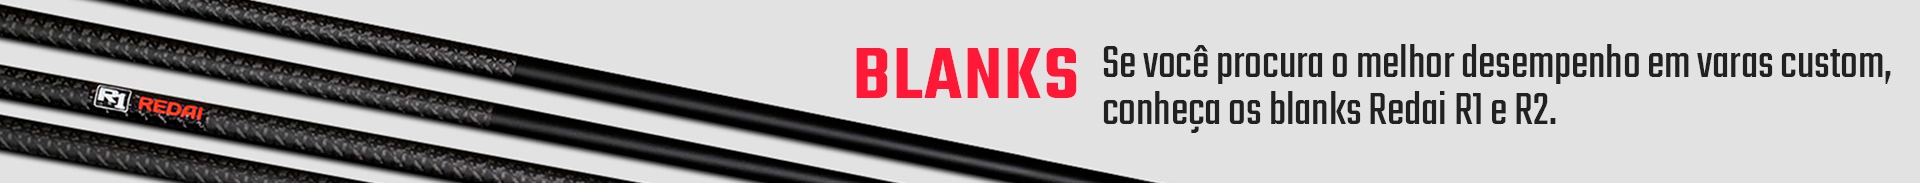 Banner mini 4- blanks